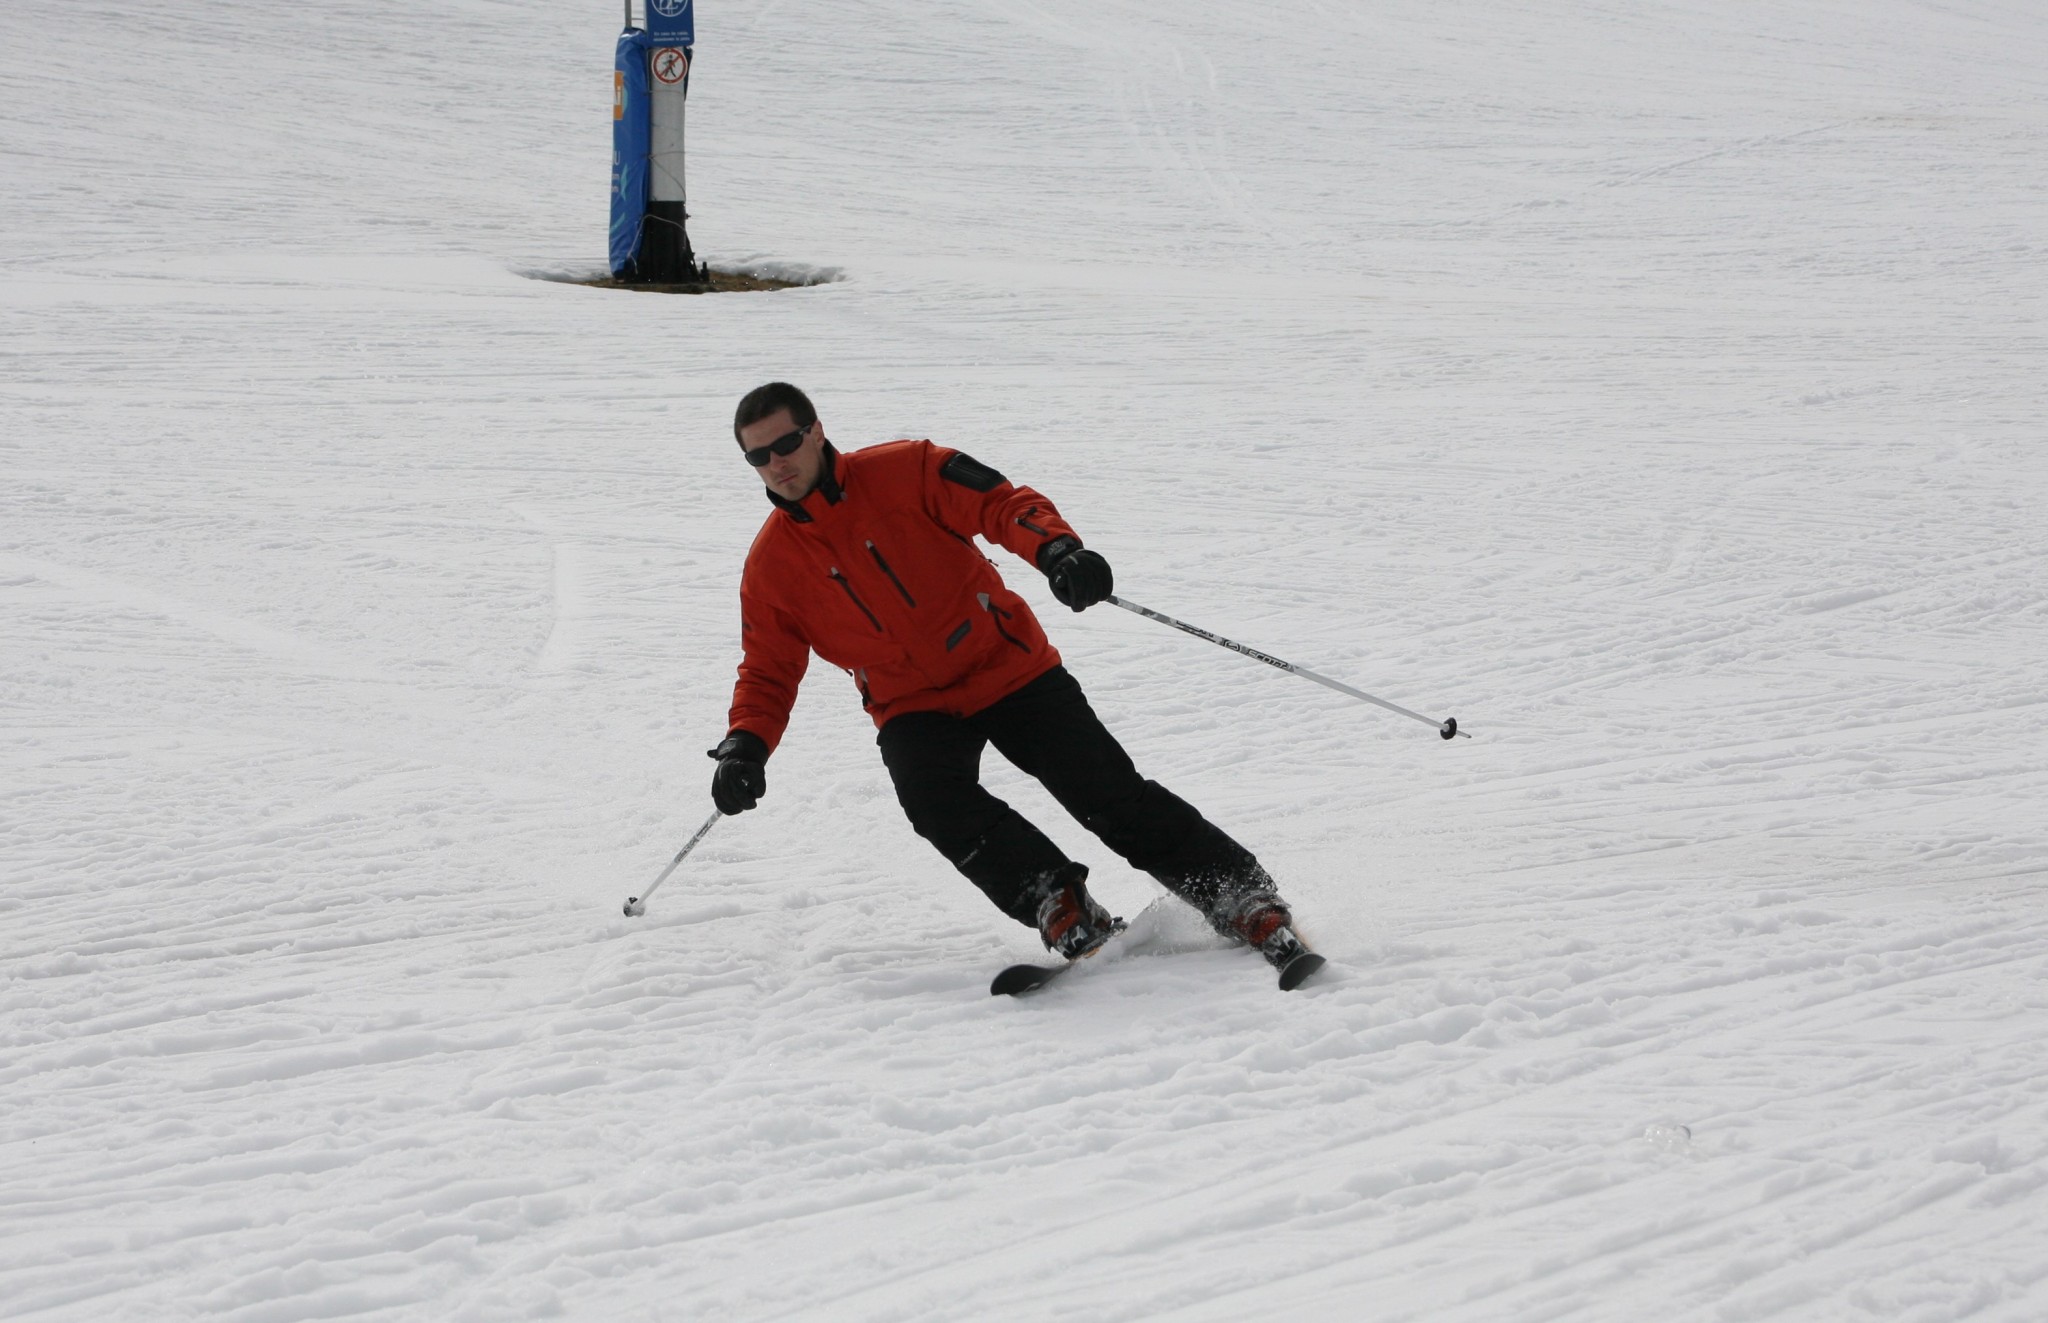 El peligroso esquí interior